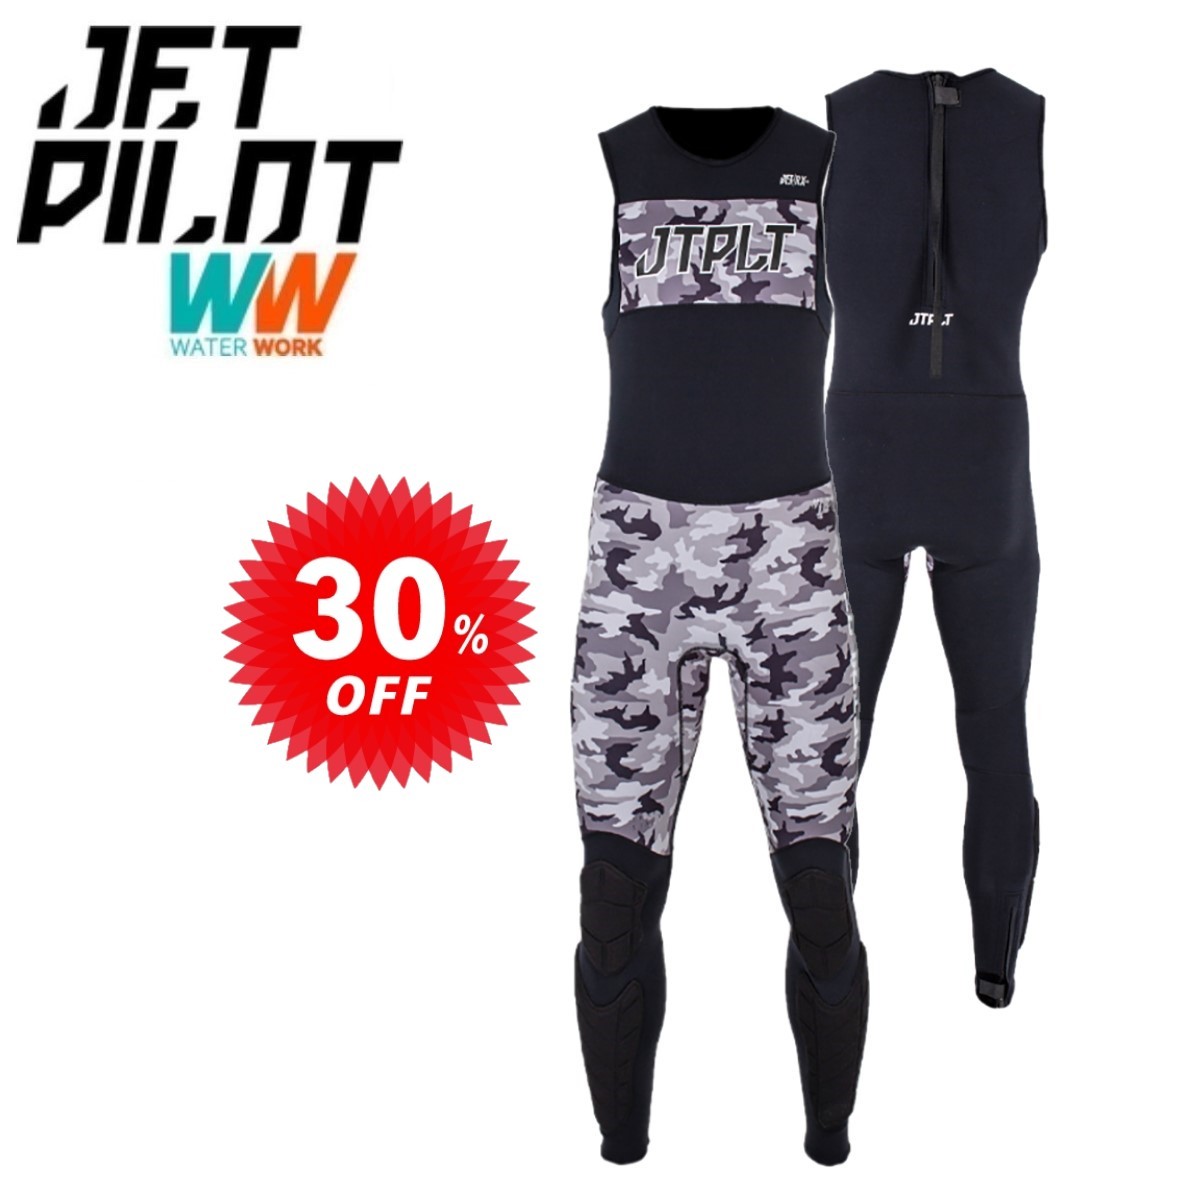 ジェットパイロット JETPILOT セール 30%オフ 送料無料 RX 2.0 レース ジョン JA21155-C ブラック/カモ 2XL